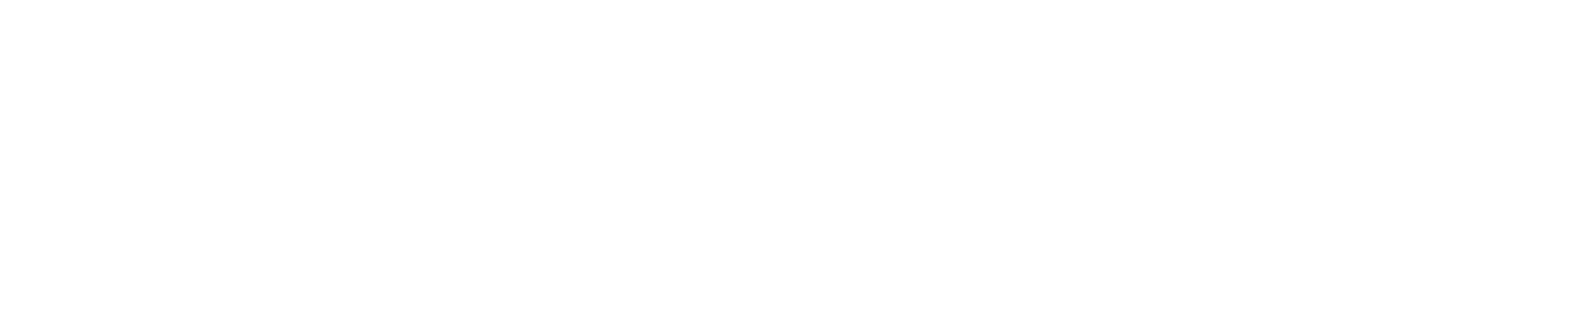 AMC Networks
 logo large for dark backgrounds (transparent PNG)